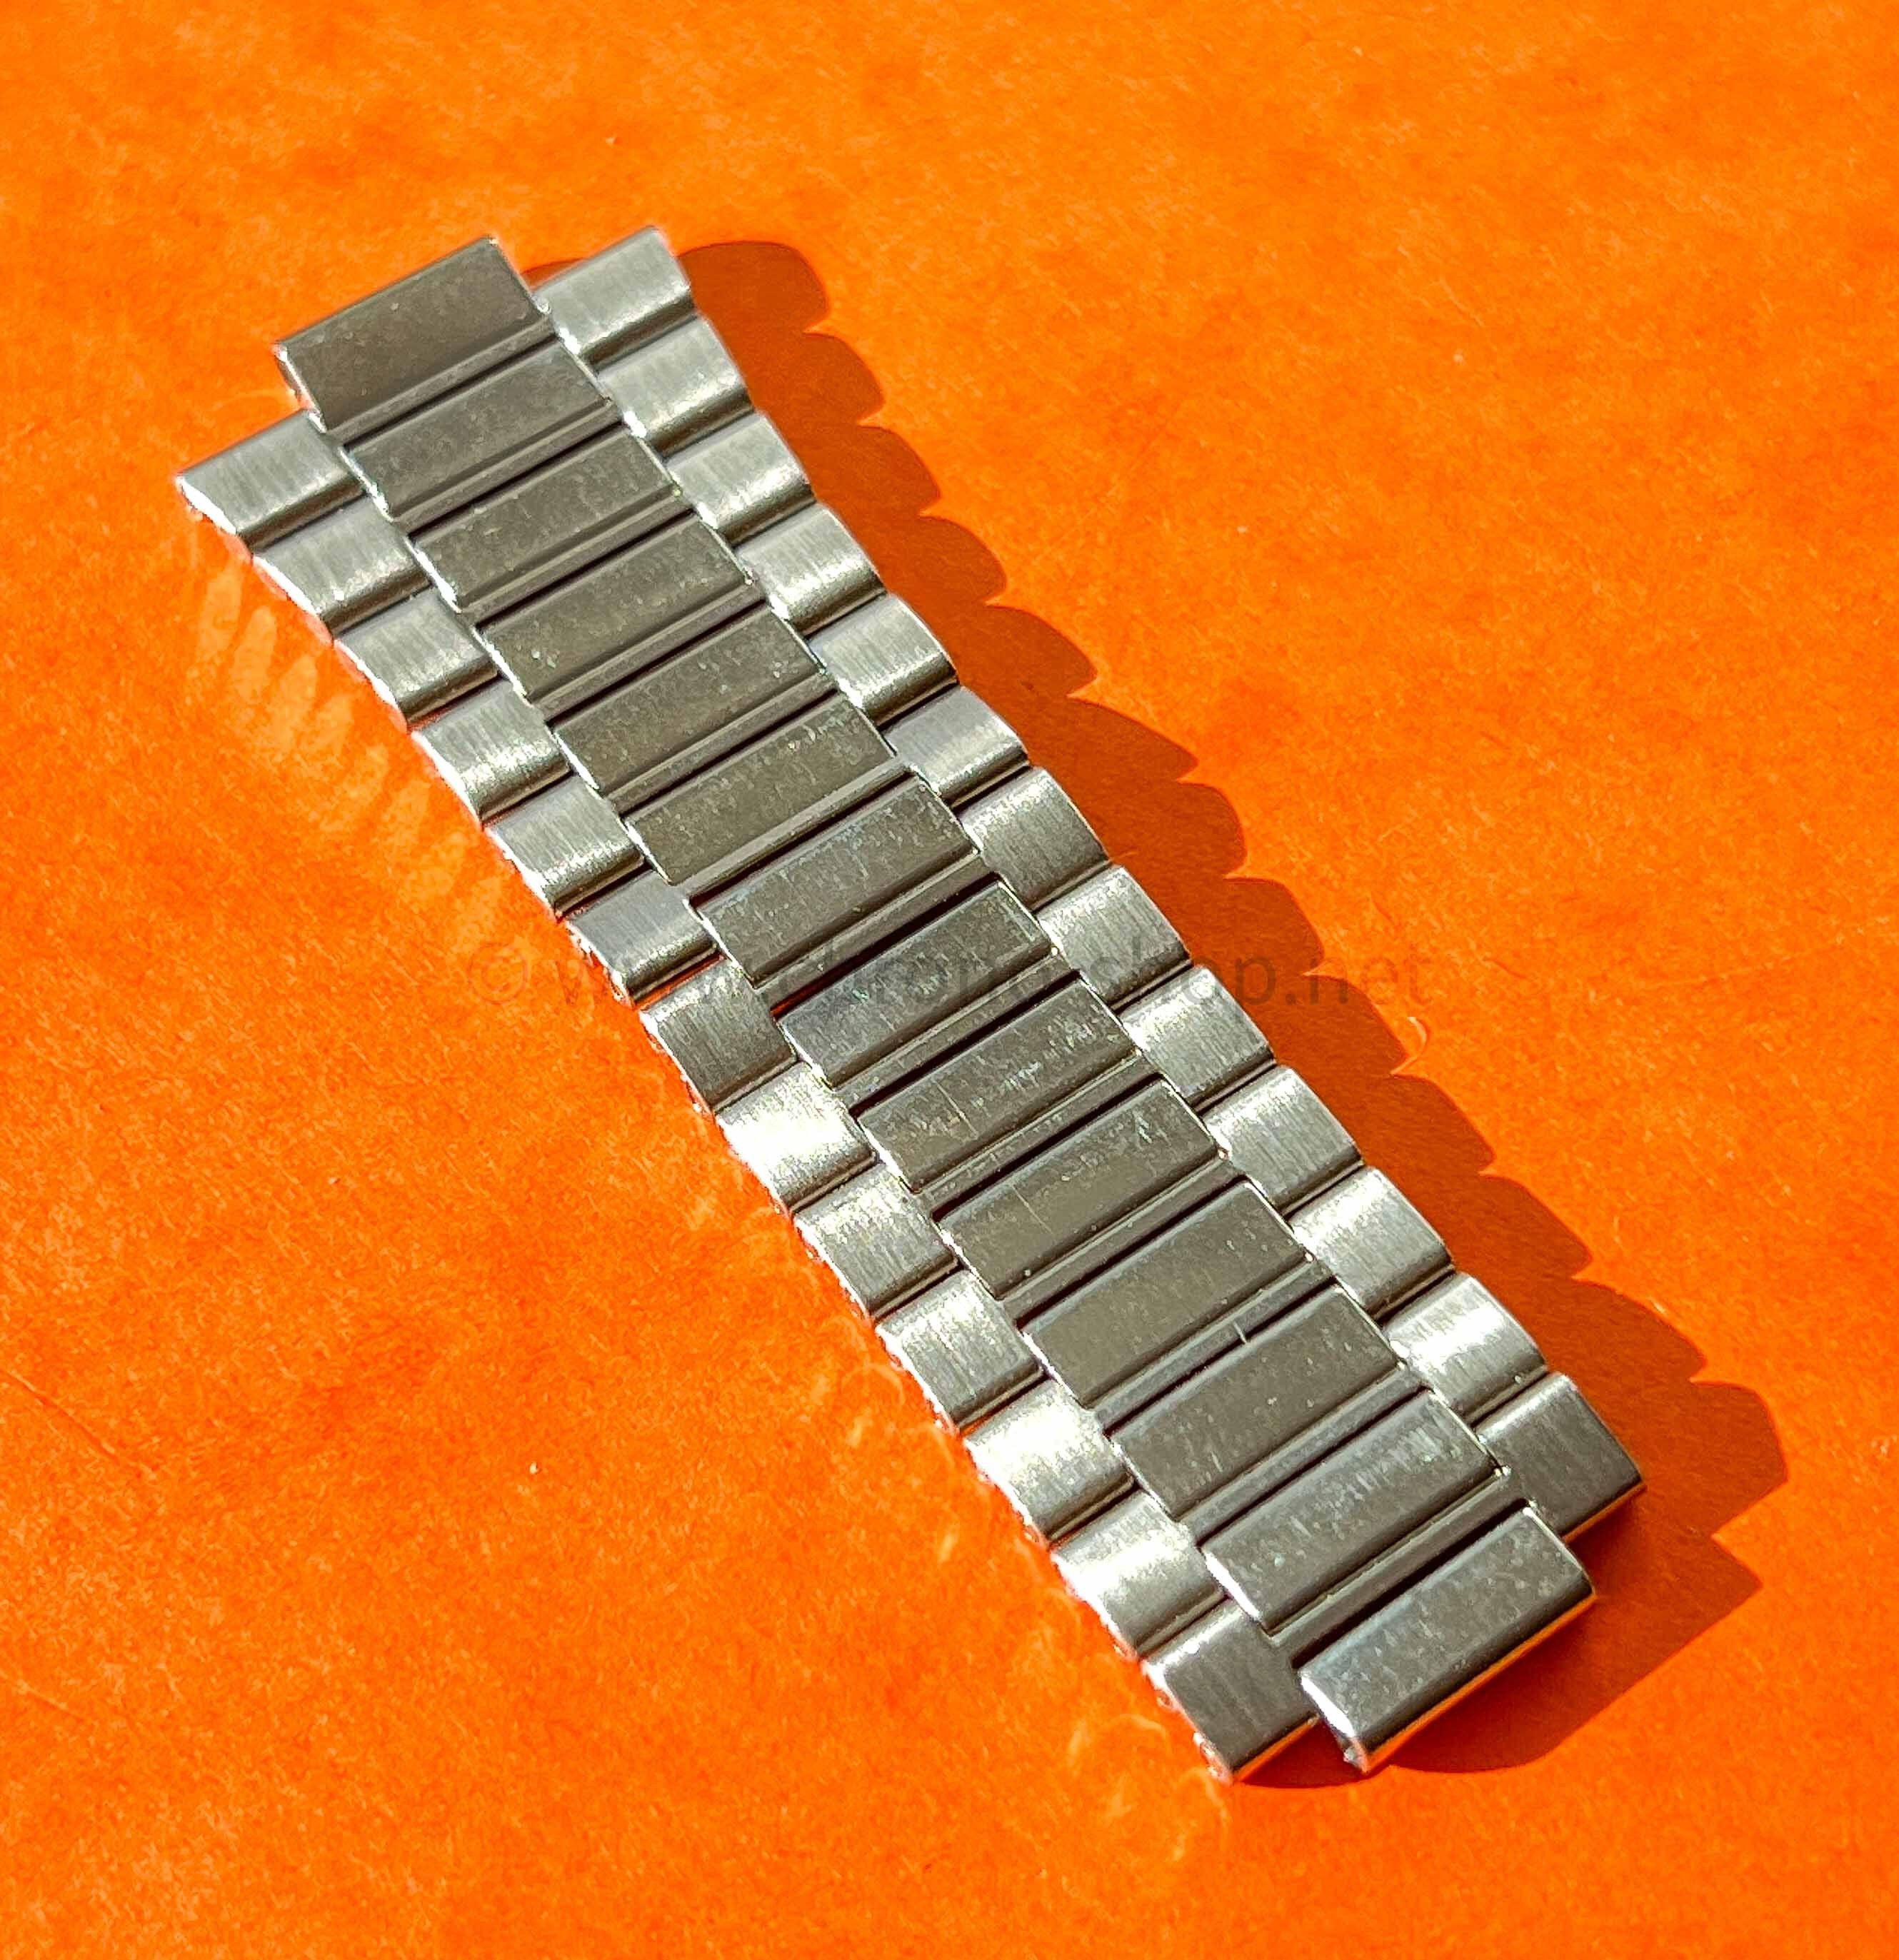 Vintage Ssteel 70's Watch half part 22mm style folded links bipolished Bracelet